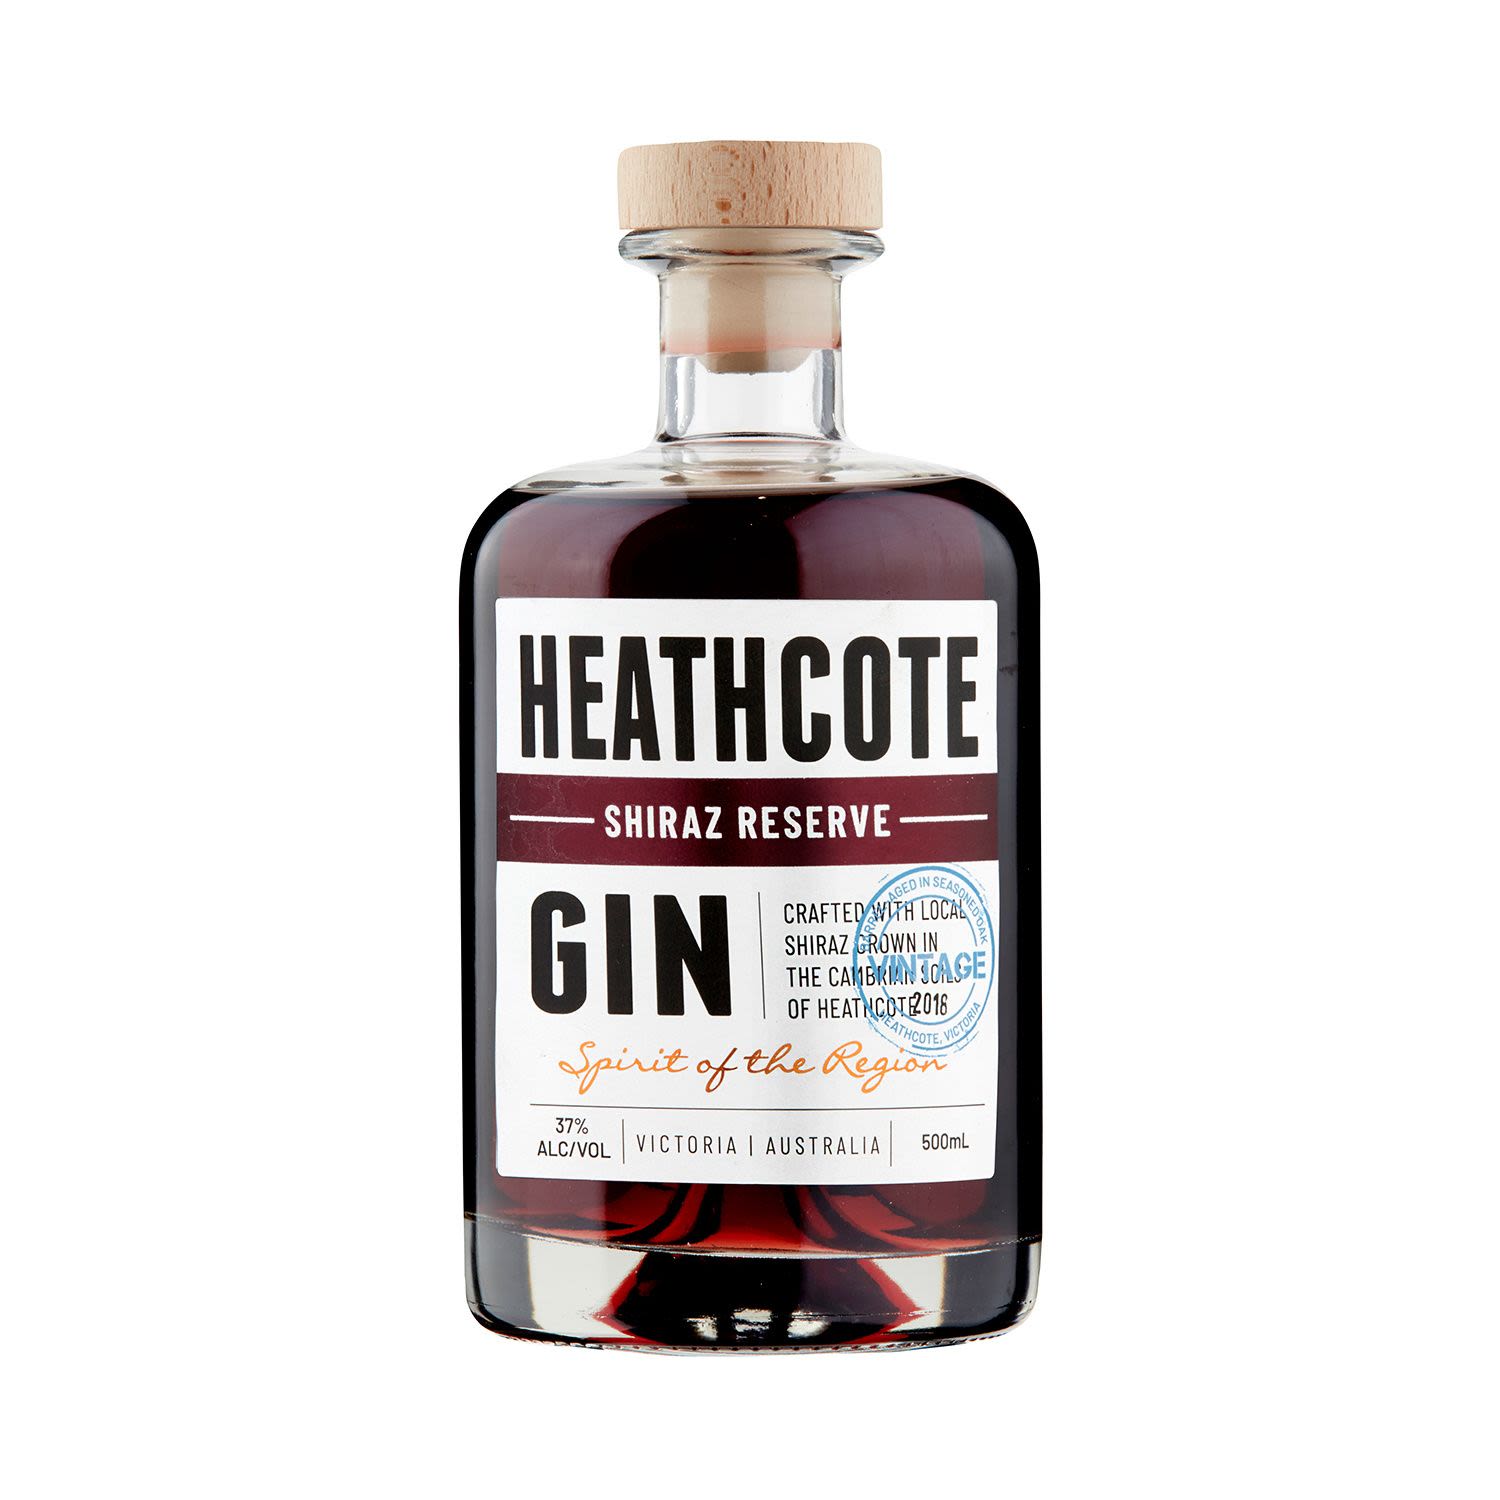 Heathcote Shiraz Reserve Gin 500mL Bottle